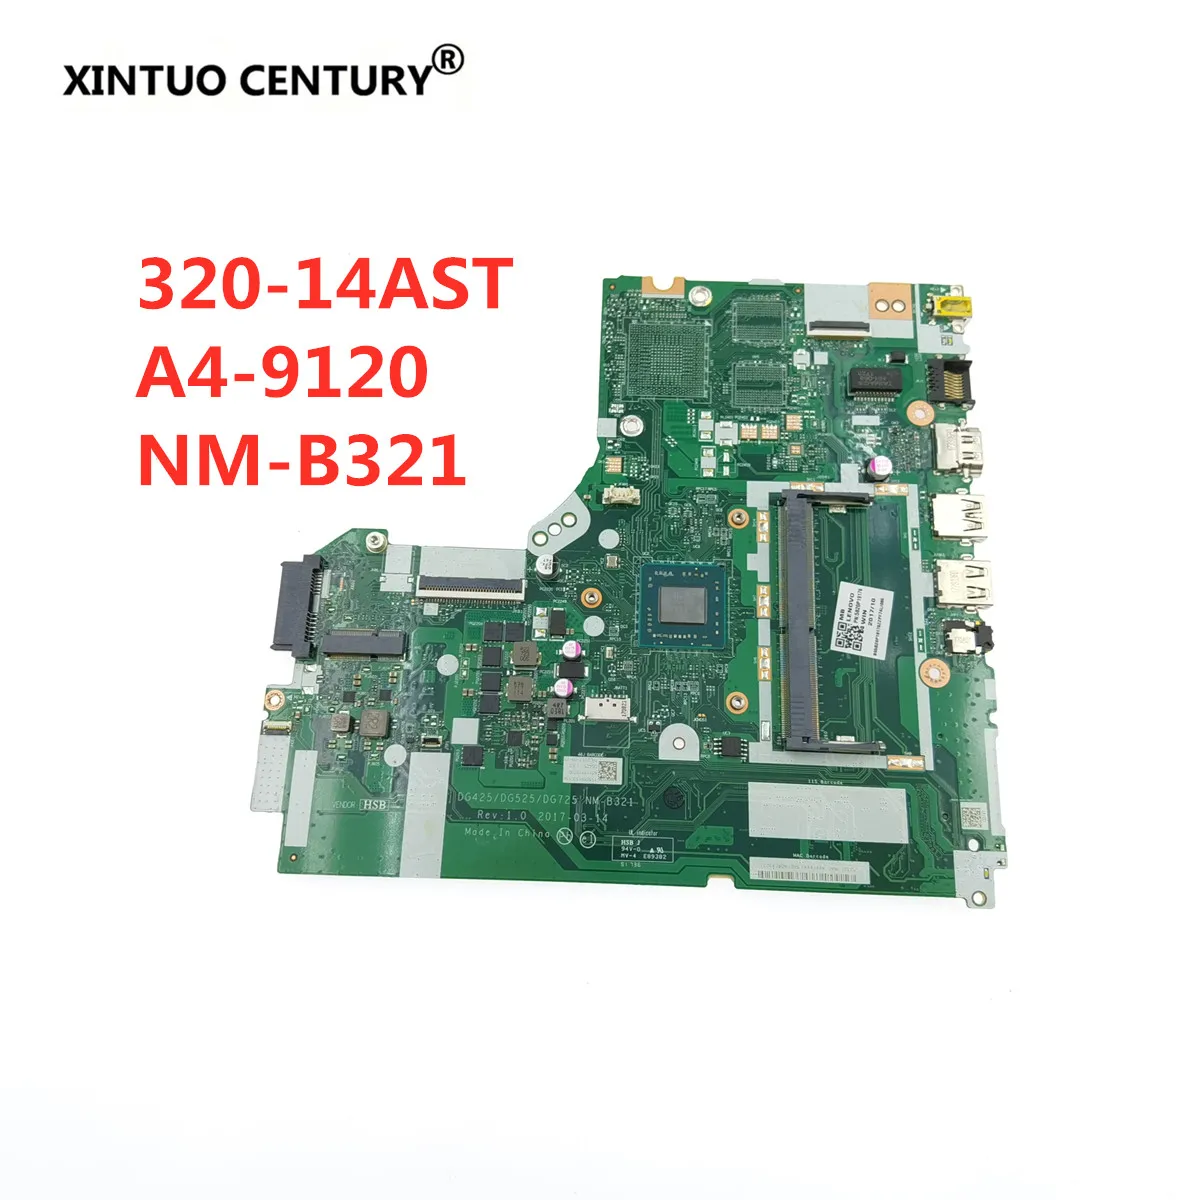 

Для Lenovo IdeaPad 320-14ACL 320-14AST Материнская плата ноутбука DG425 DG525 DG725 NM-B321 A4-9120 DDR4 материнская плата протестированная 100% работа